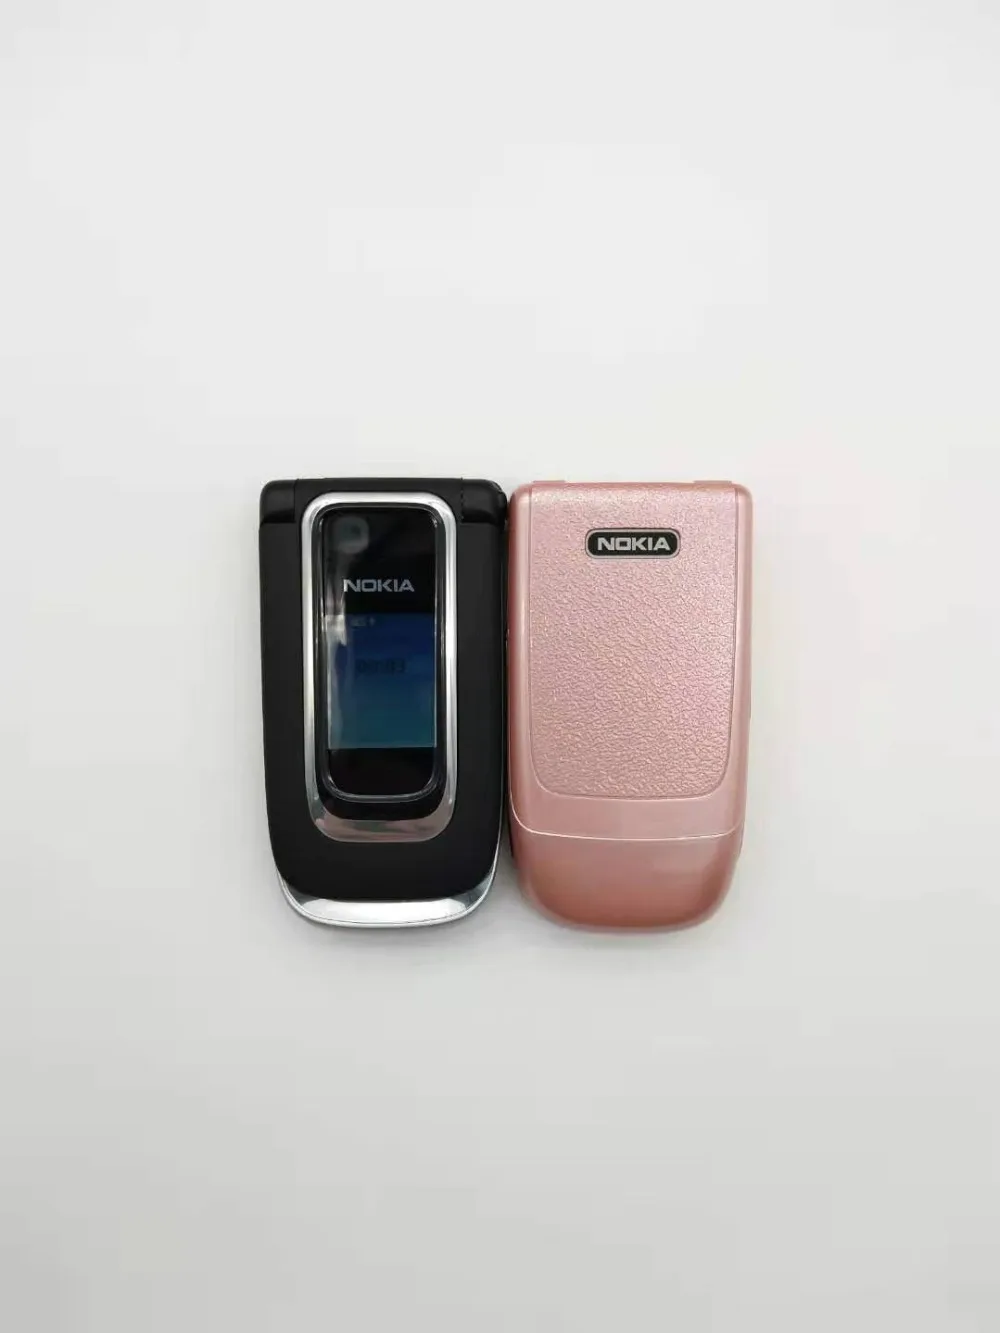 Разблокированный 6131 Мобильный телефон Nokia 6131 дешевая GSM камера FM Bluetooth хорошее качество телефон